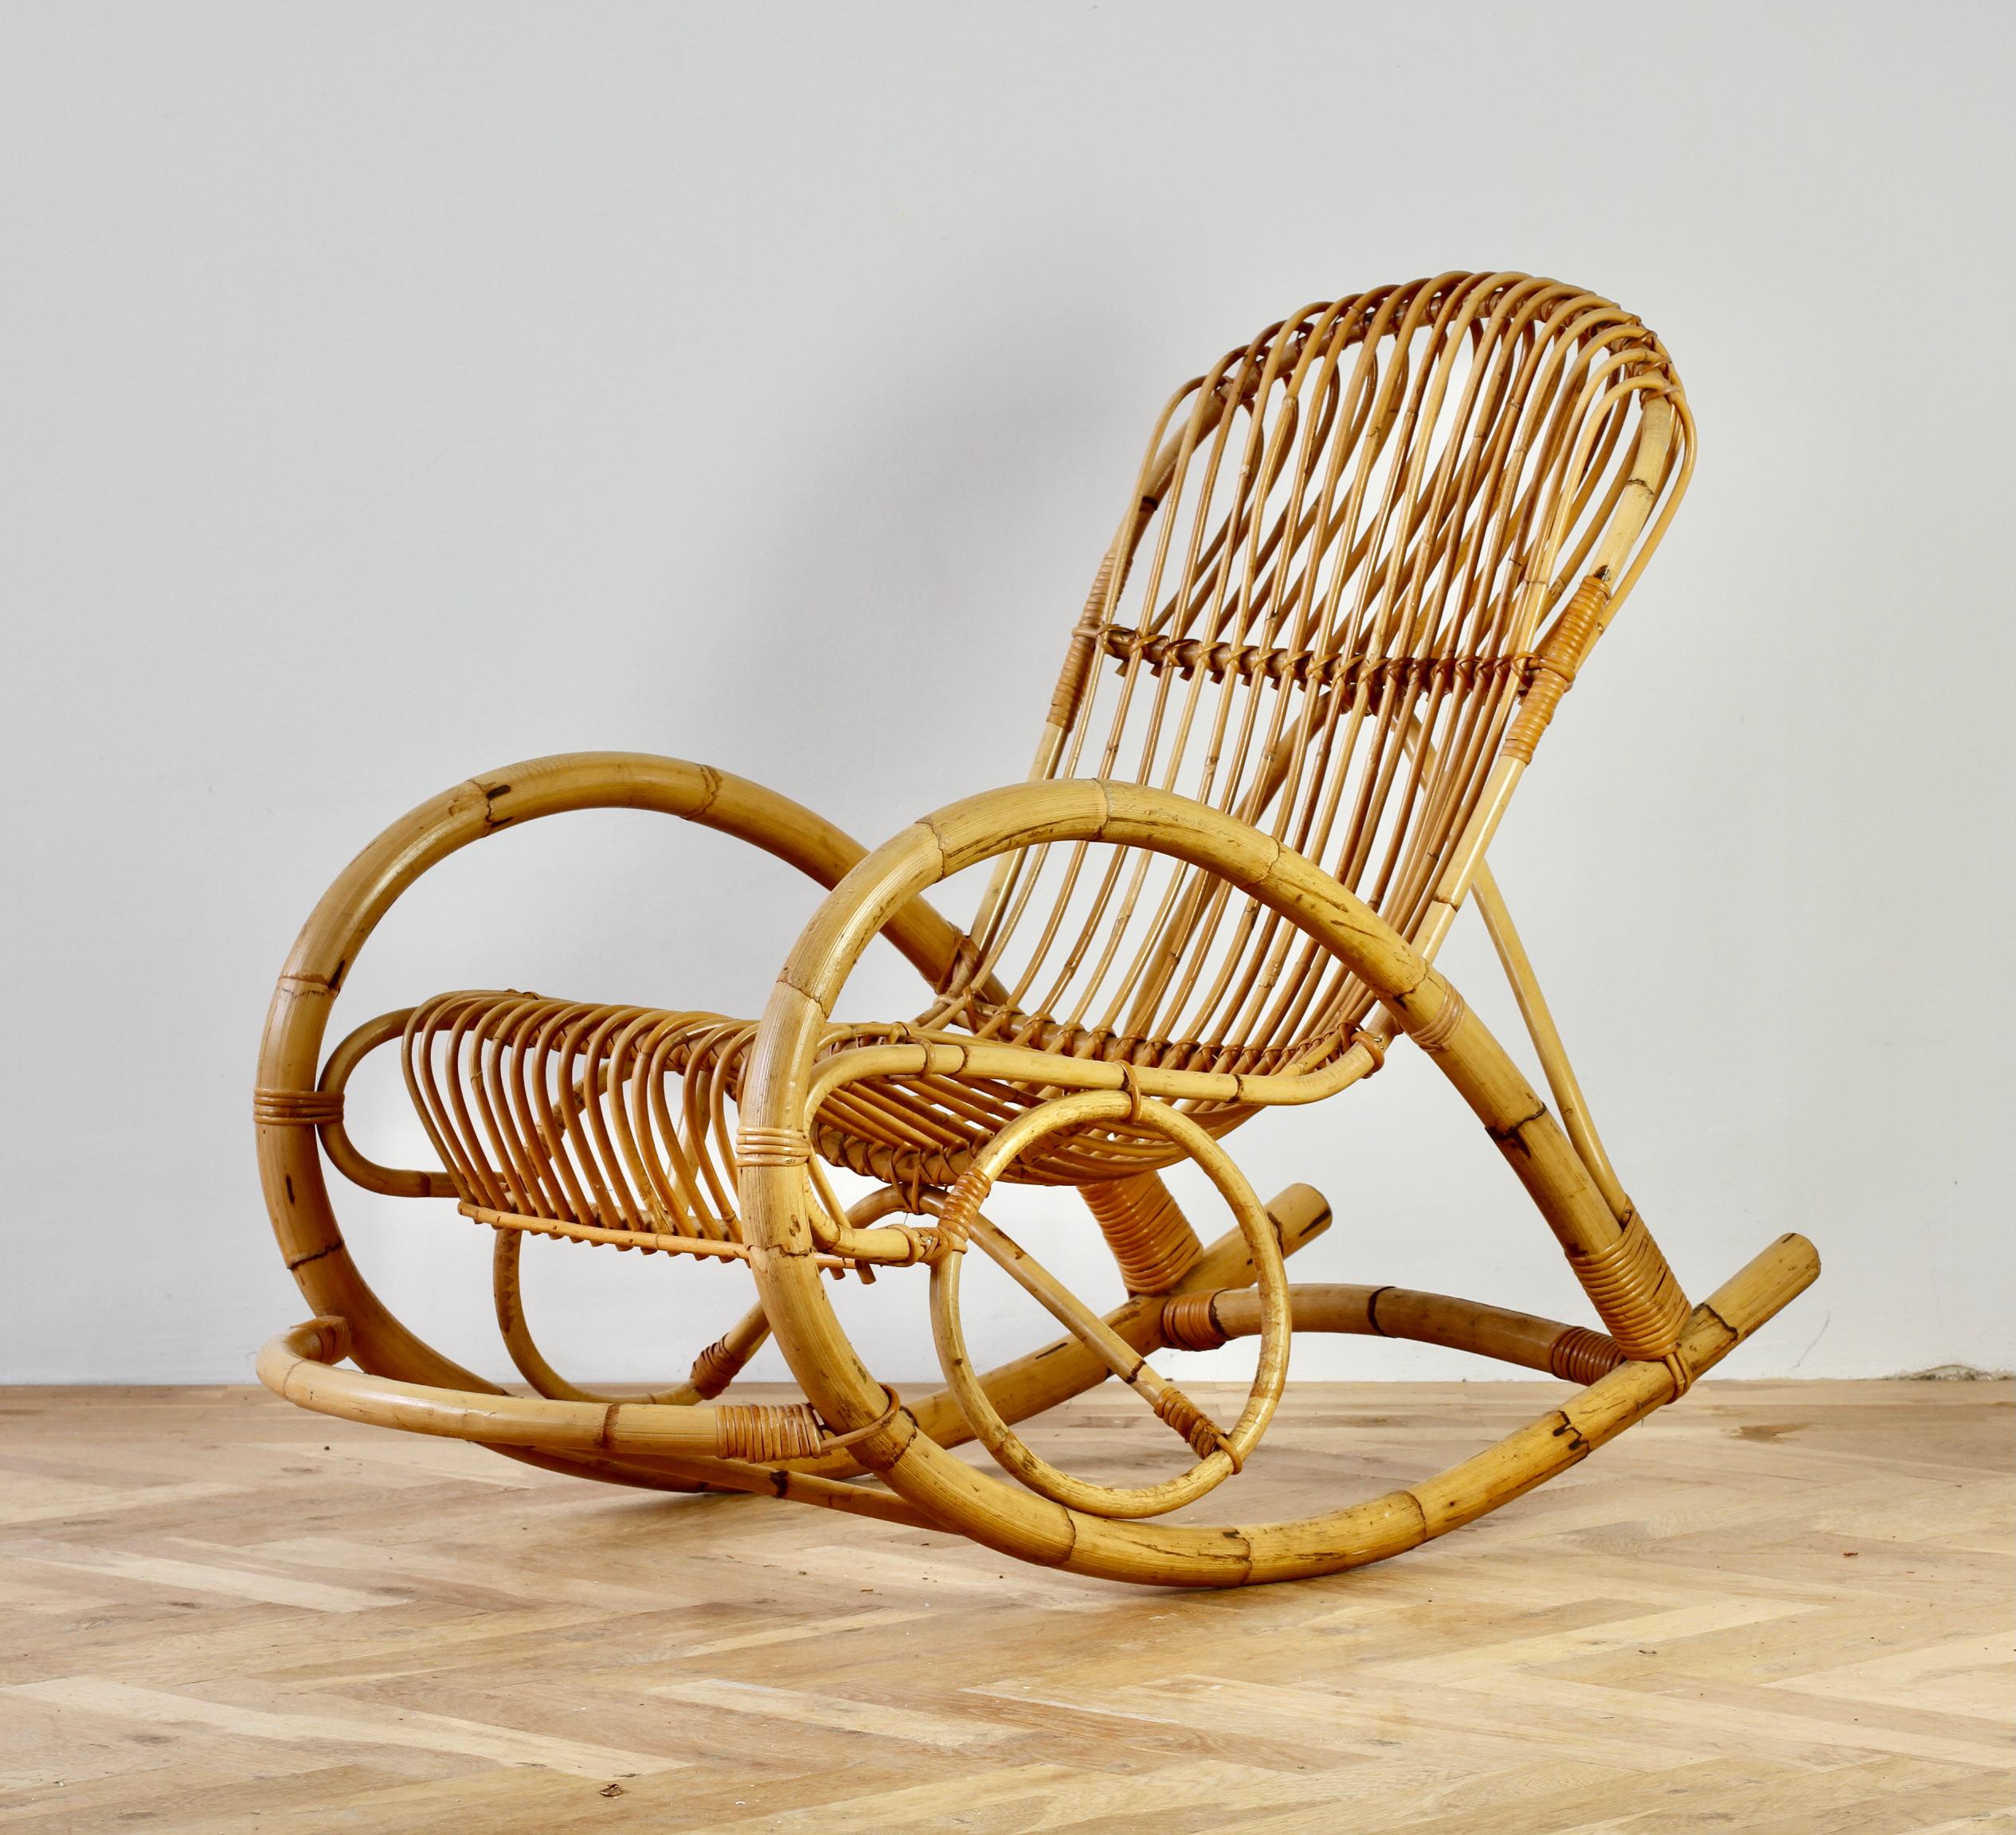 Franco Albini Stil Vintage Mitte des Jahrhunderts gebogenen Bambus & Rattan hohen Rückenlehne Schaukel oder Lounge-Stuhl. Schönes Design - sehr 1960er / 1970er Jahre und würde eine schöne Ergänzung für jedes Haus, vor allem mit dem Boho,